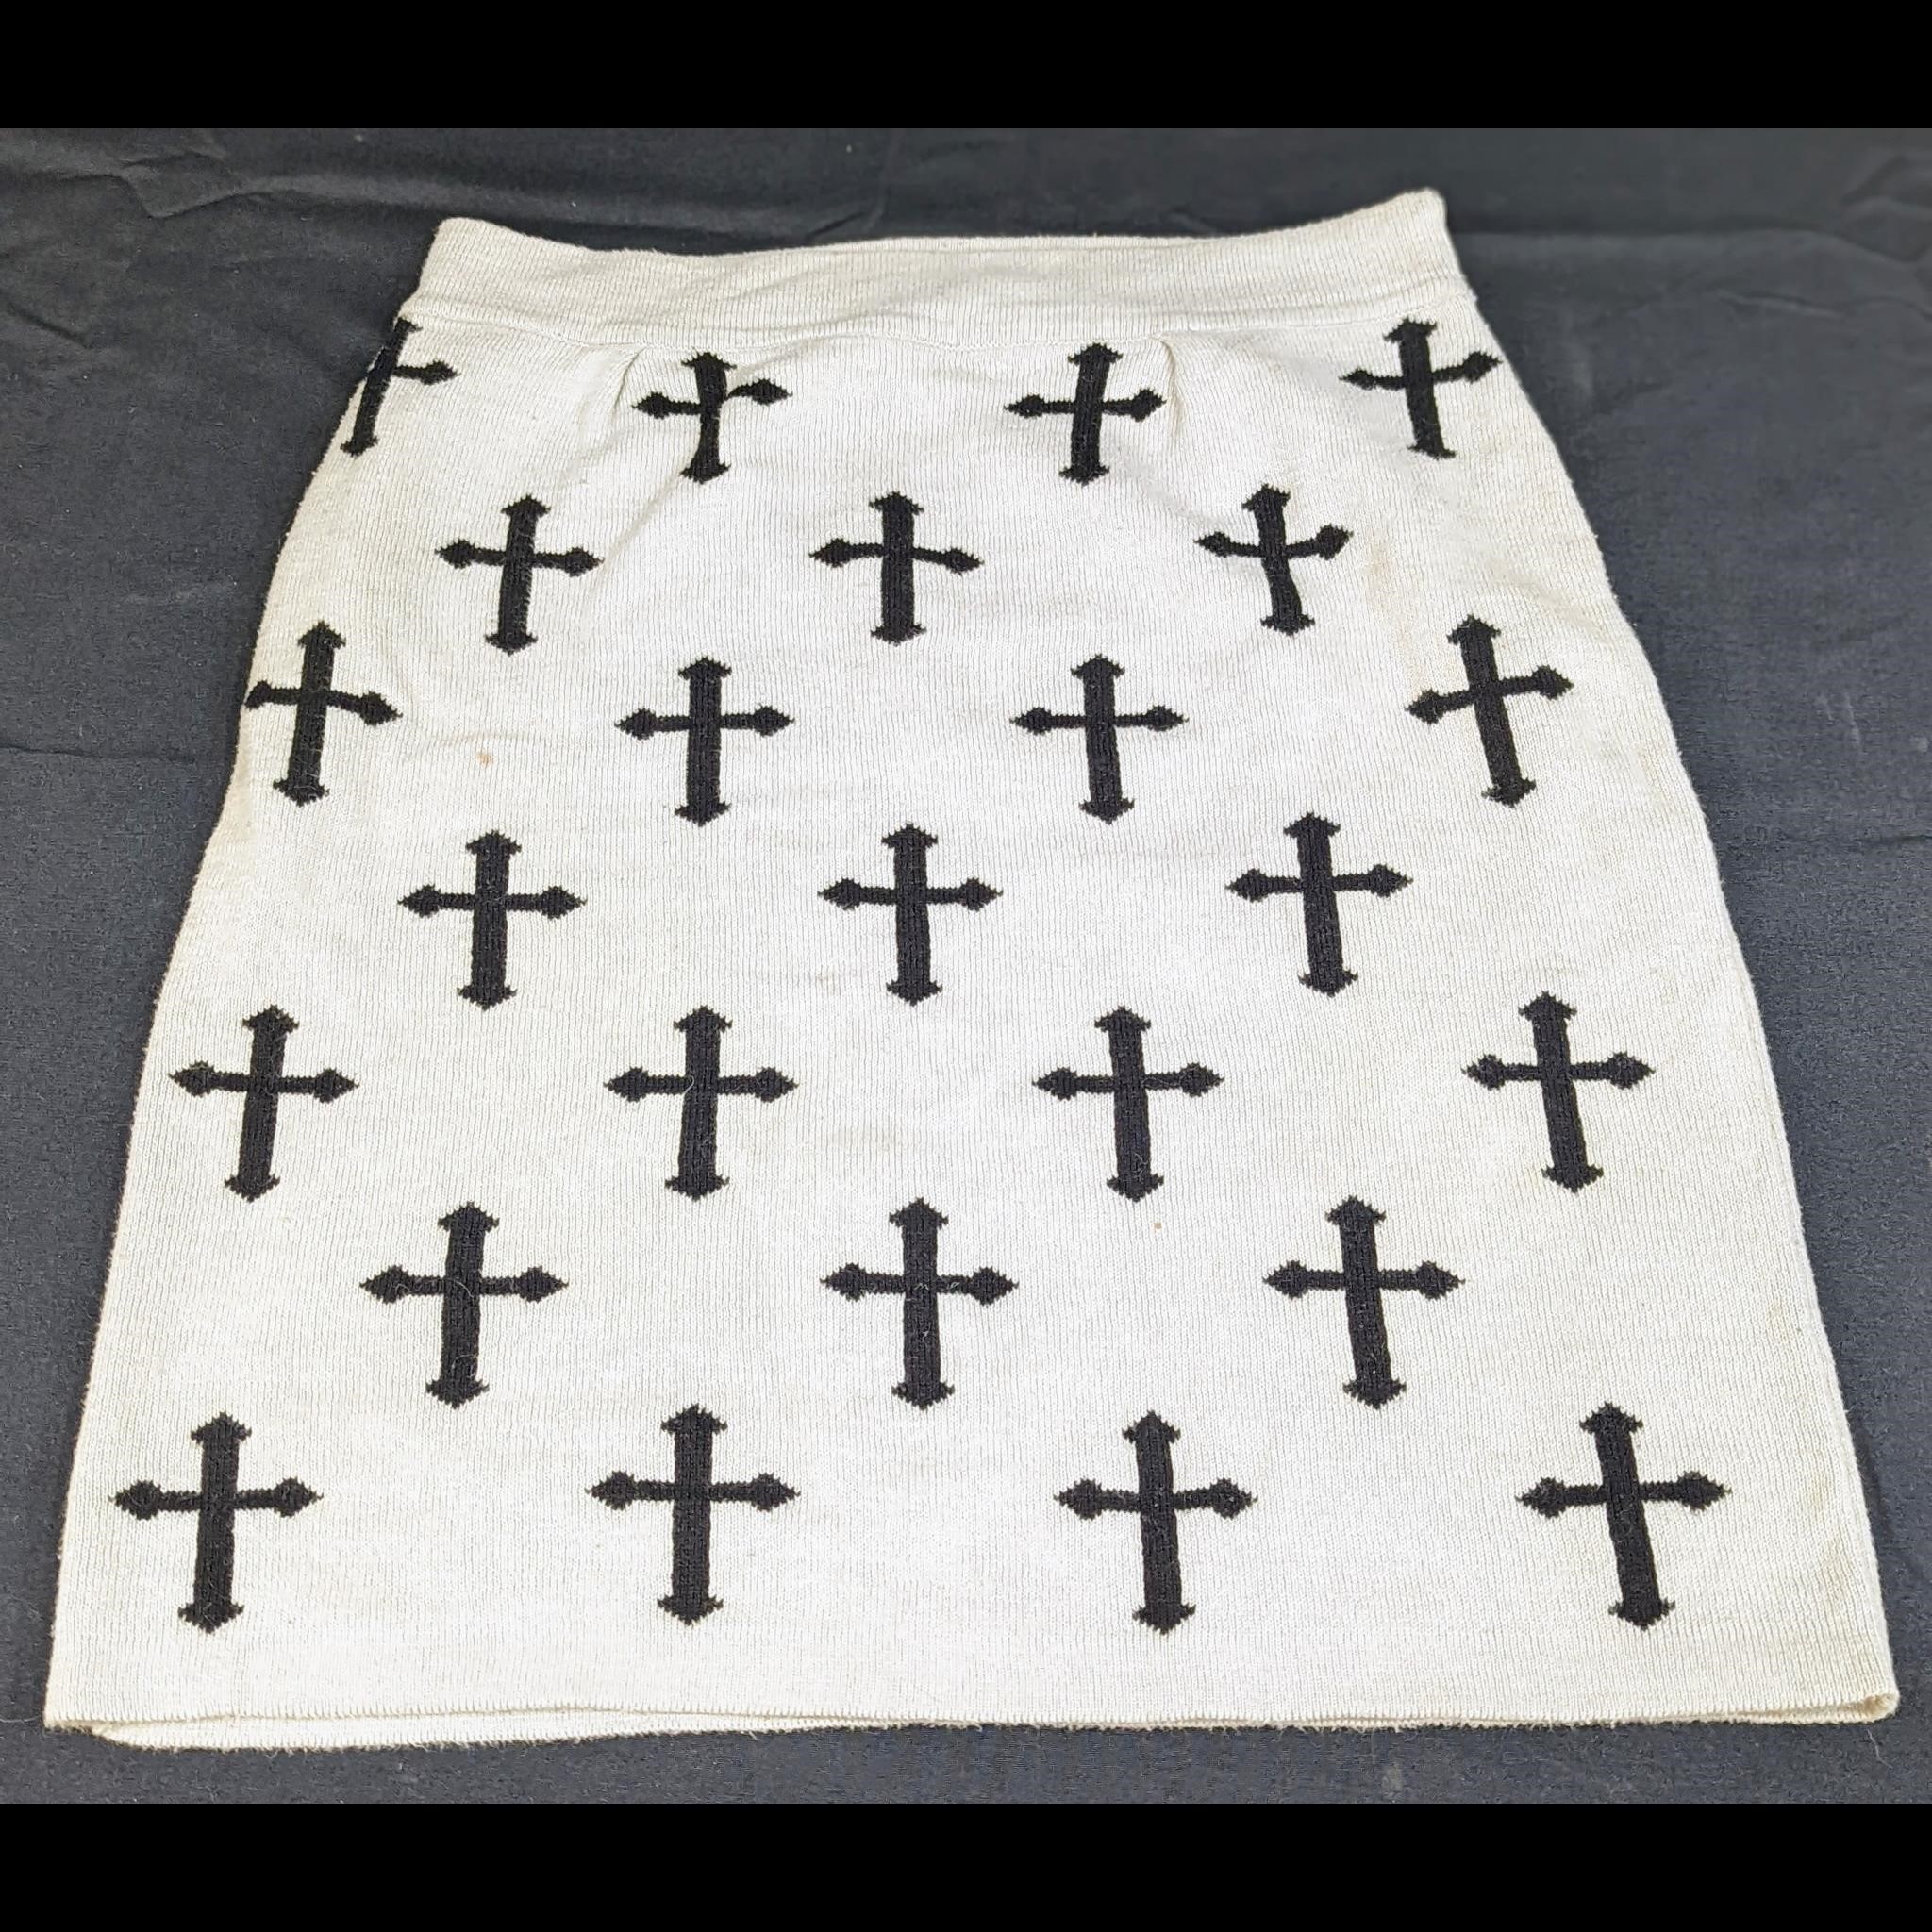 Dex Bodycon Skirt with Crosses